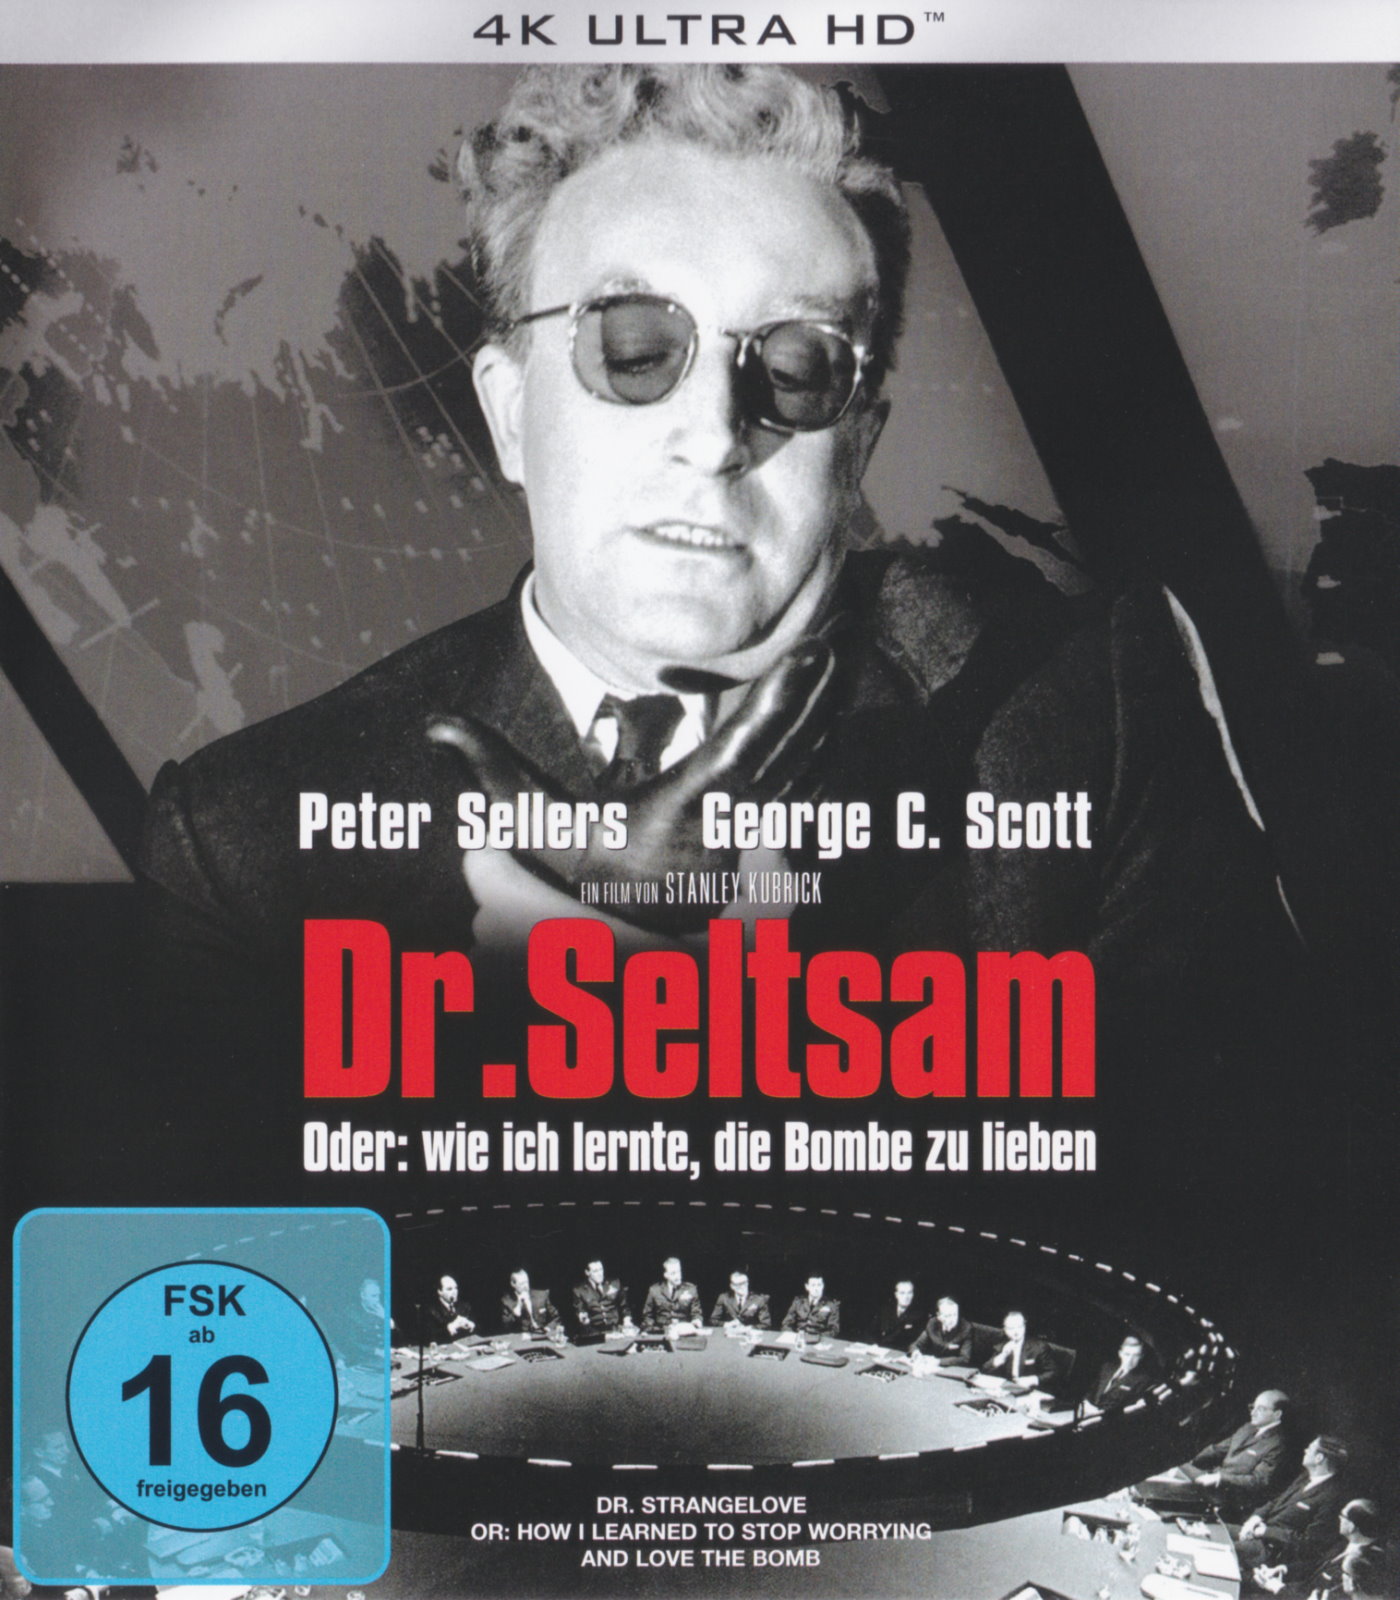 Cover - Dr. Seltsam - Oder: Wie ich lernte, die Bombe zu lieben.jpg